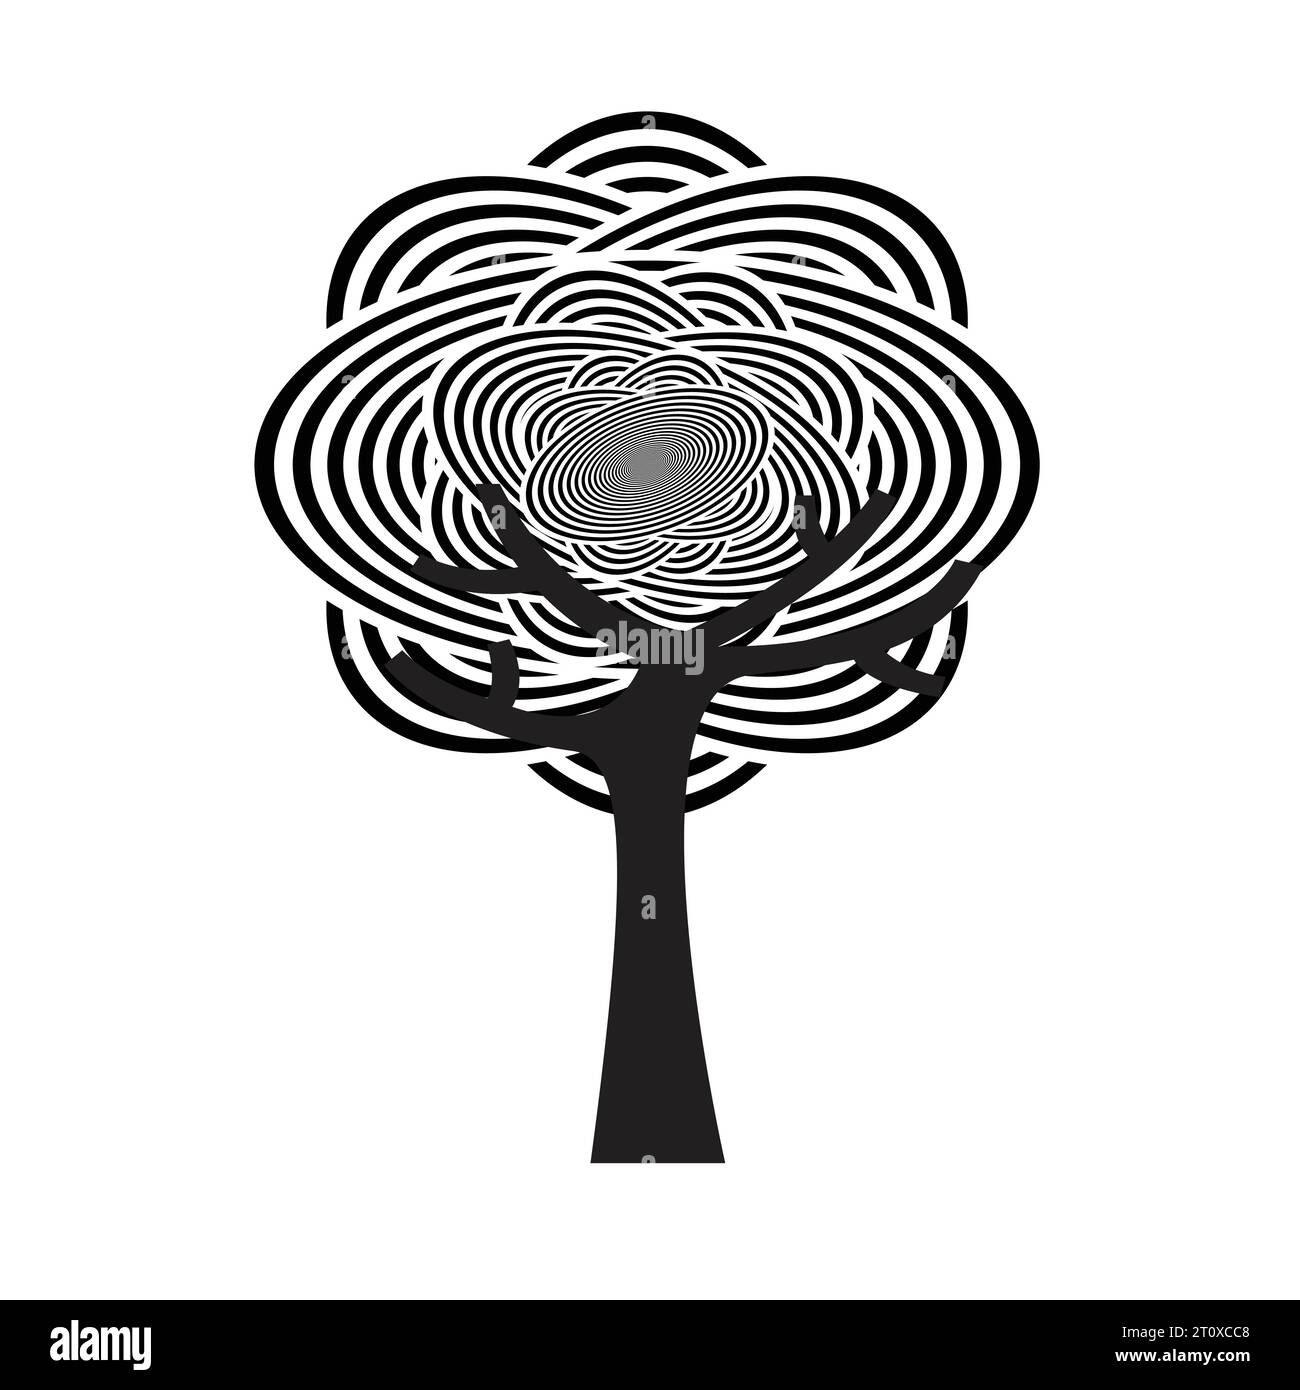 Baum mit abstraktem Muster mit schwarz-weißen Wellenlinien, Kreisen und Kurven Stock Vektor